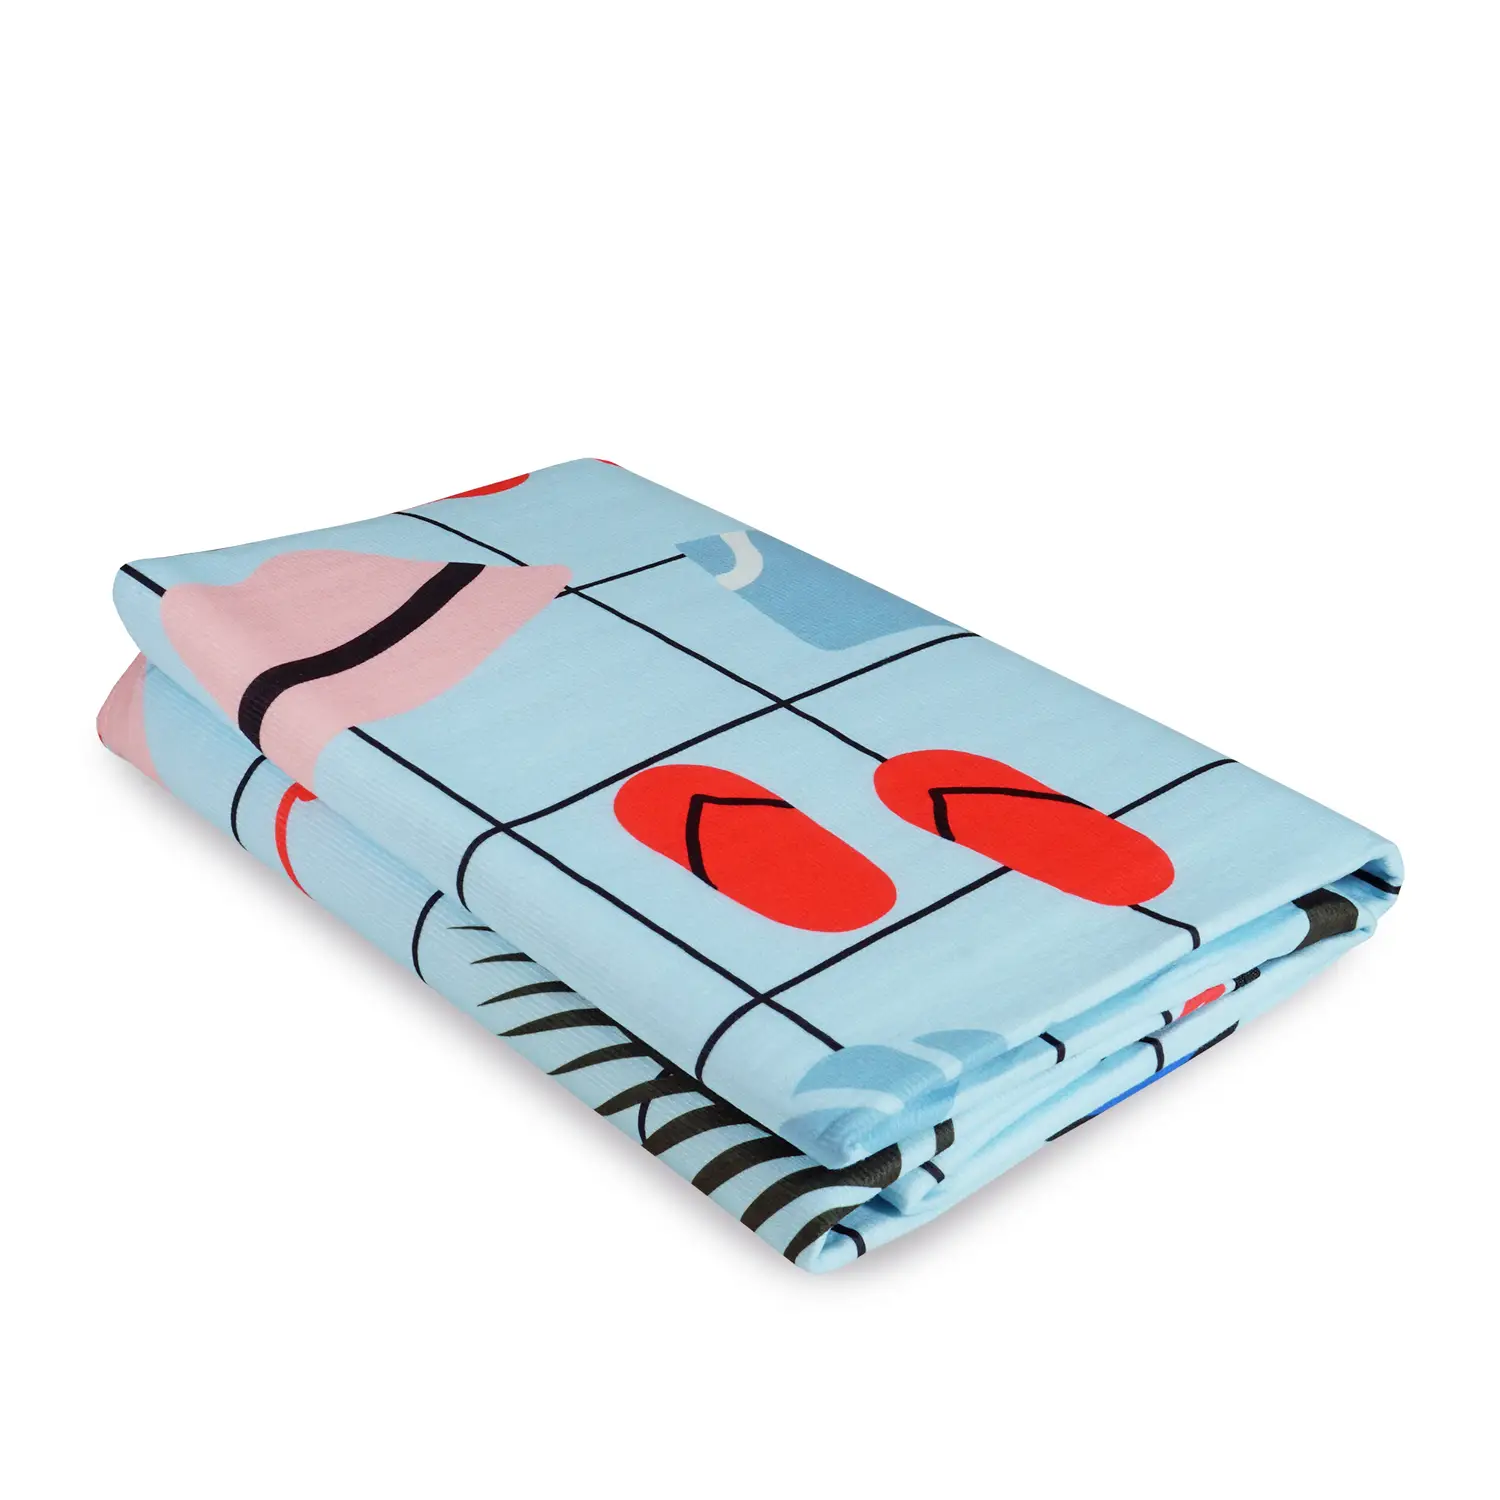 Влагостойкий коврик-сумка Supretto для пикника, 145х130 см, разноцветный (7828) - фото 2